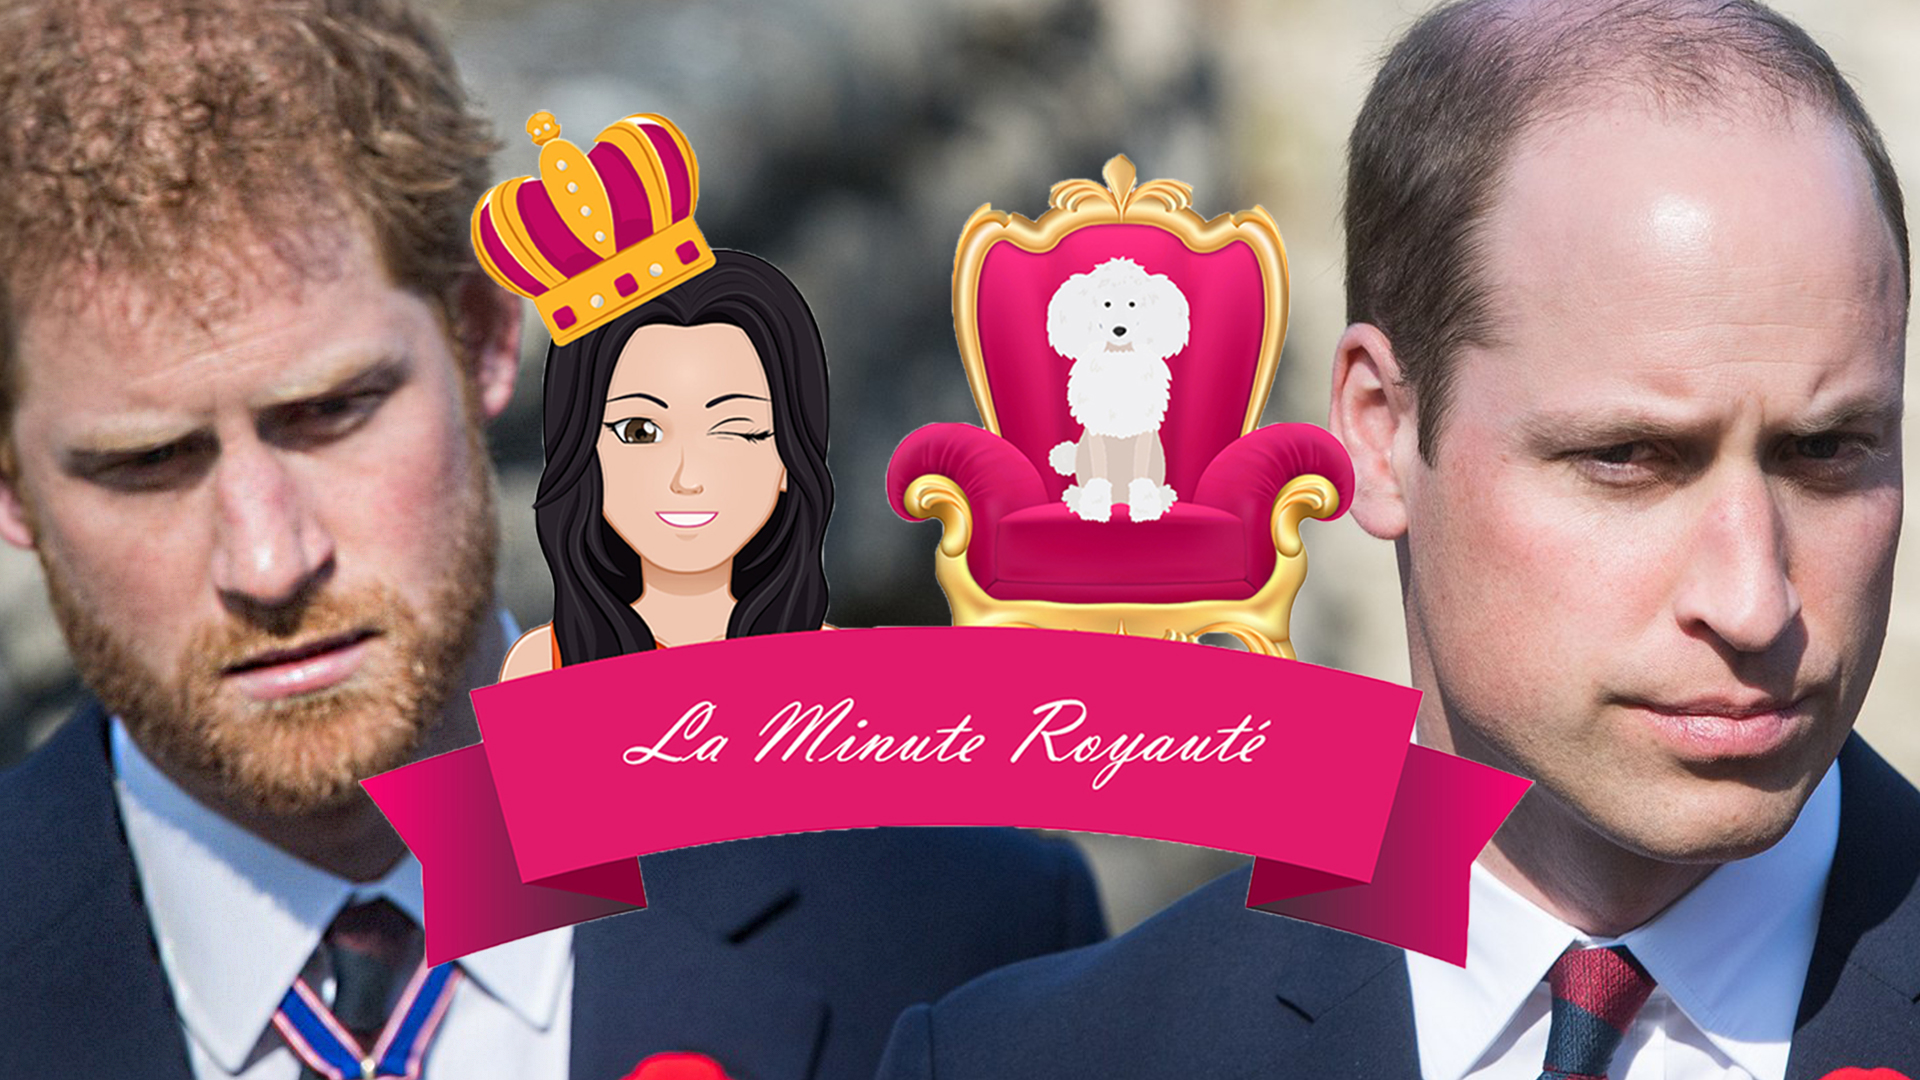 La minute royauté - Le prince Harry et le prince William : Ces images qui font jaser